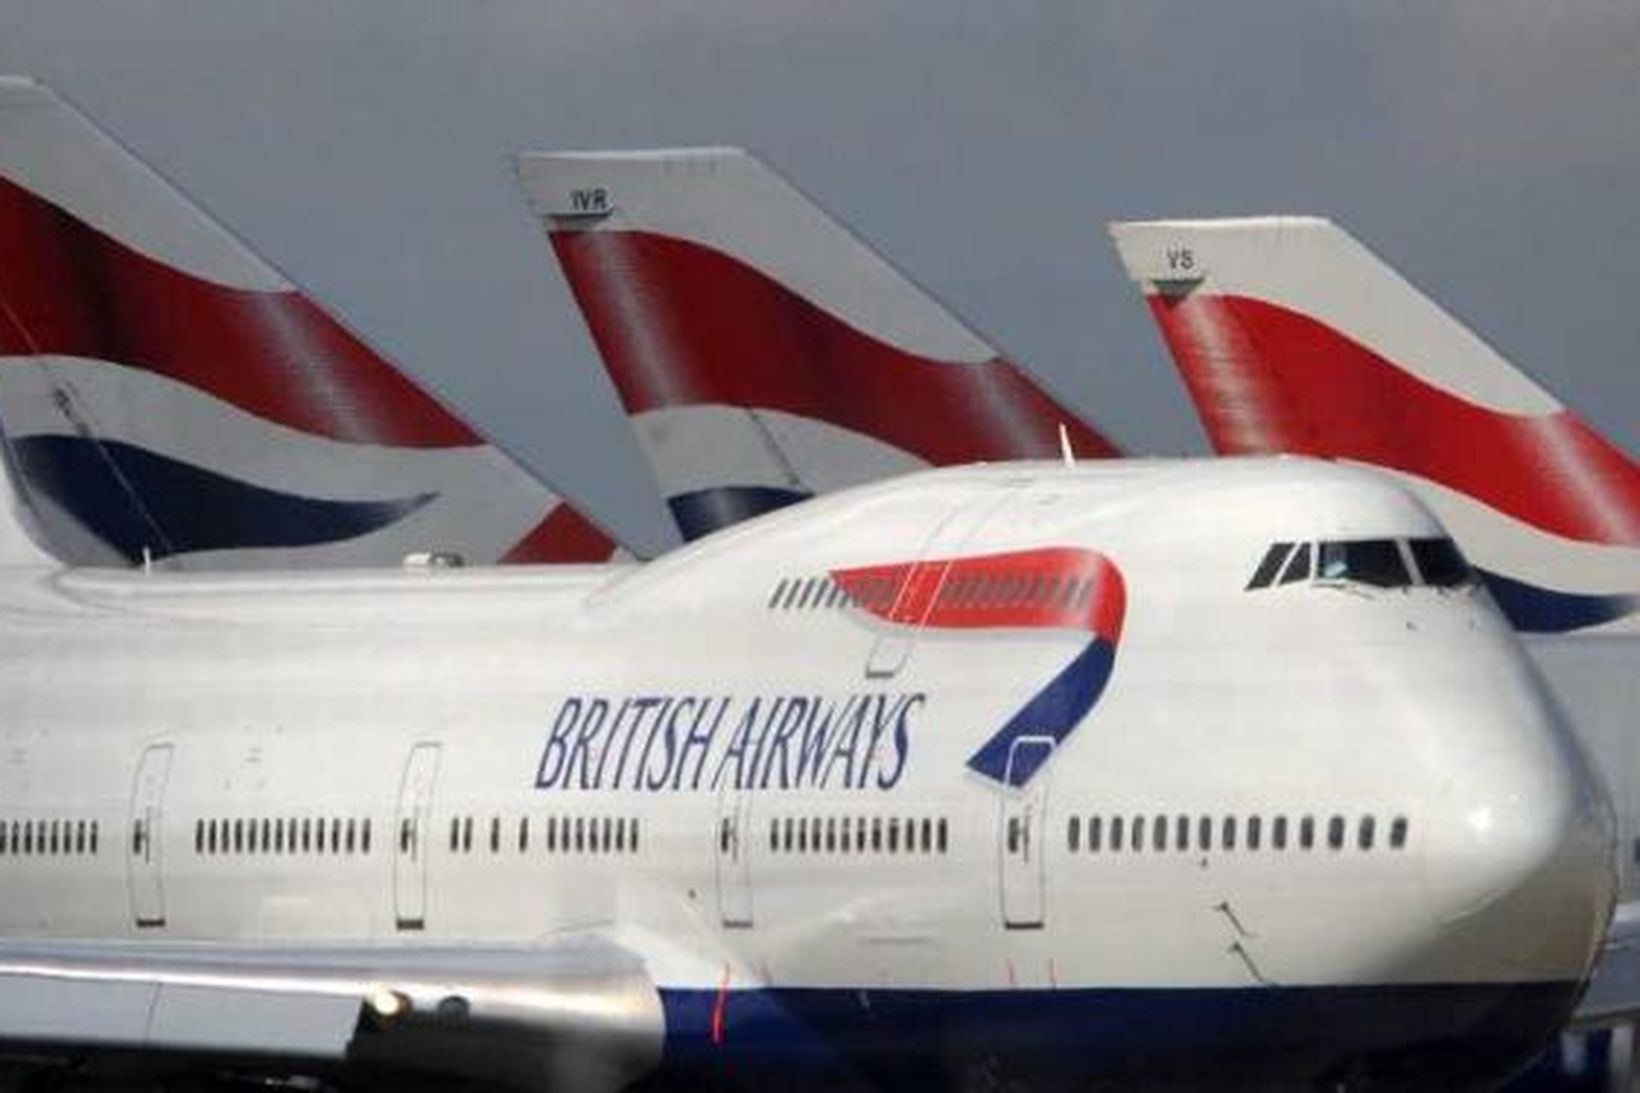 British Airways kyrrsetja 22 þotur og fækka flugleiðum.